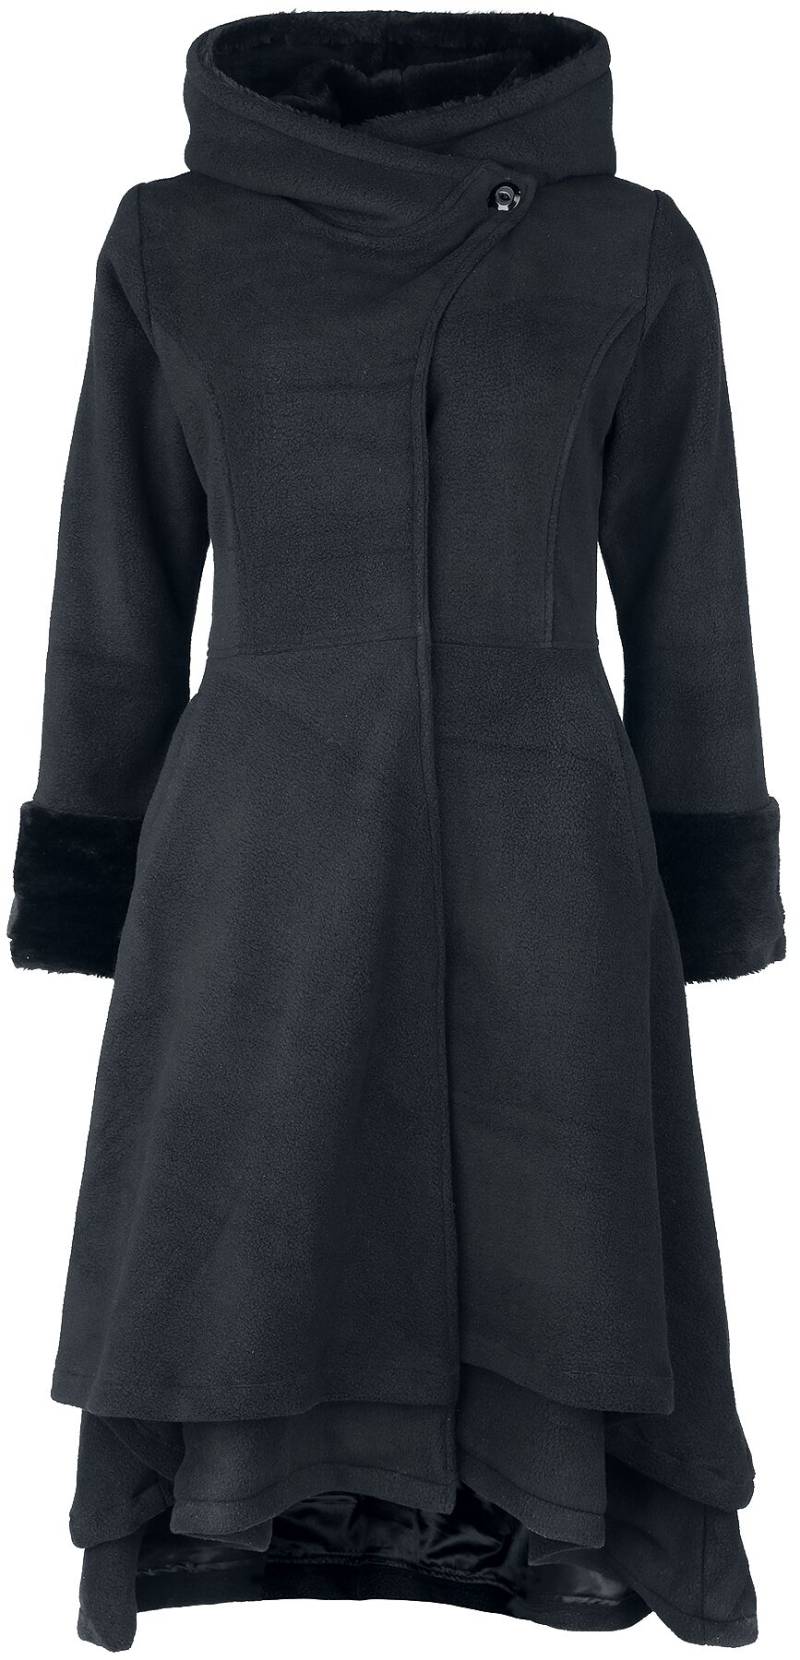 Vixxsin Gloaming Coat Mantel schwarz in XL von Vixxsin